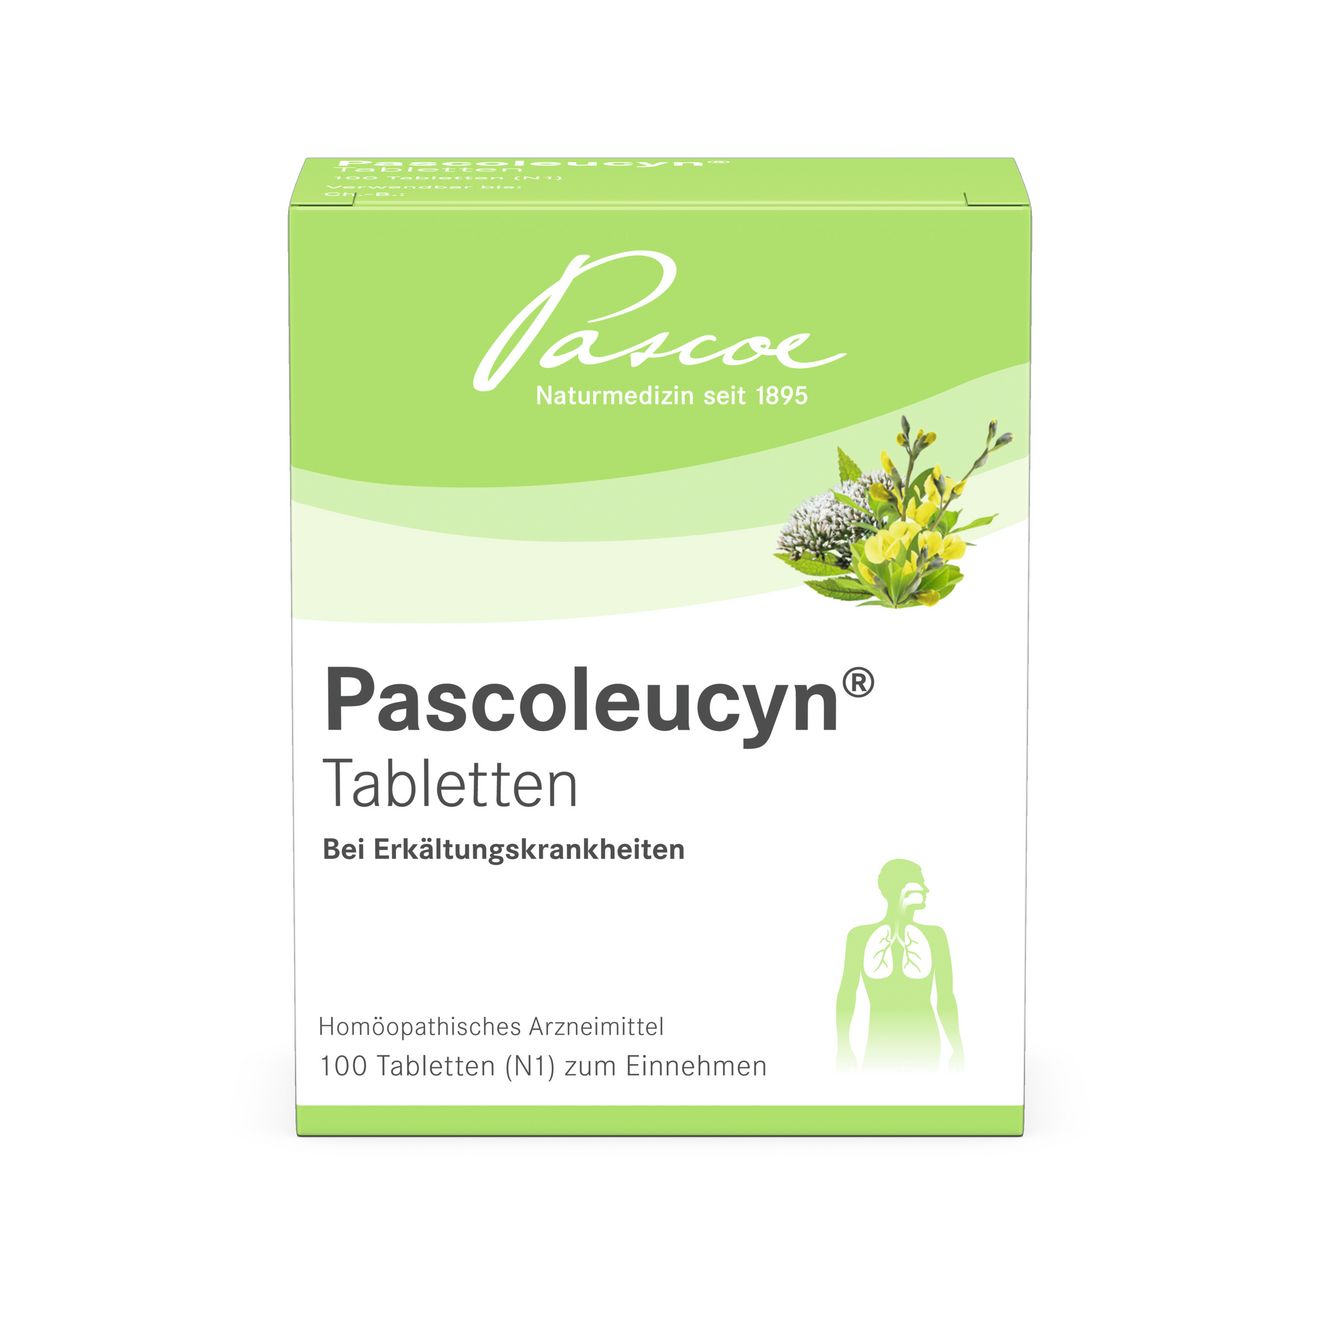 Pascoleucyn TablettenPascoleucyn Tabletten